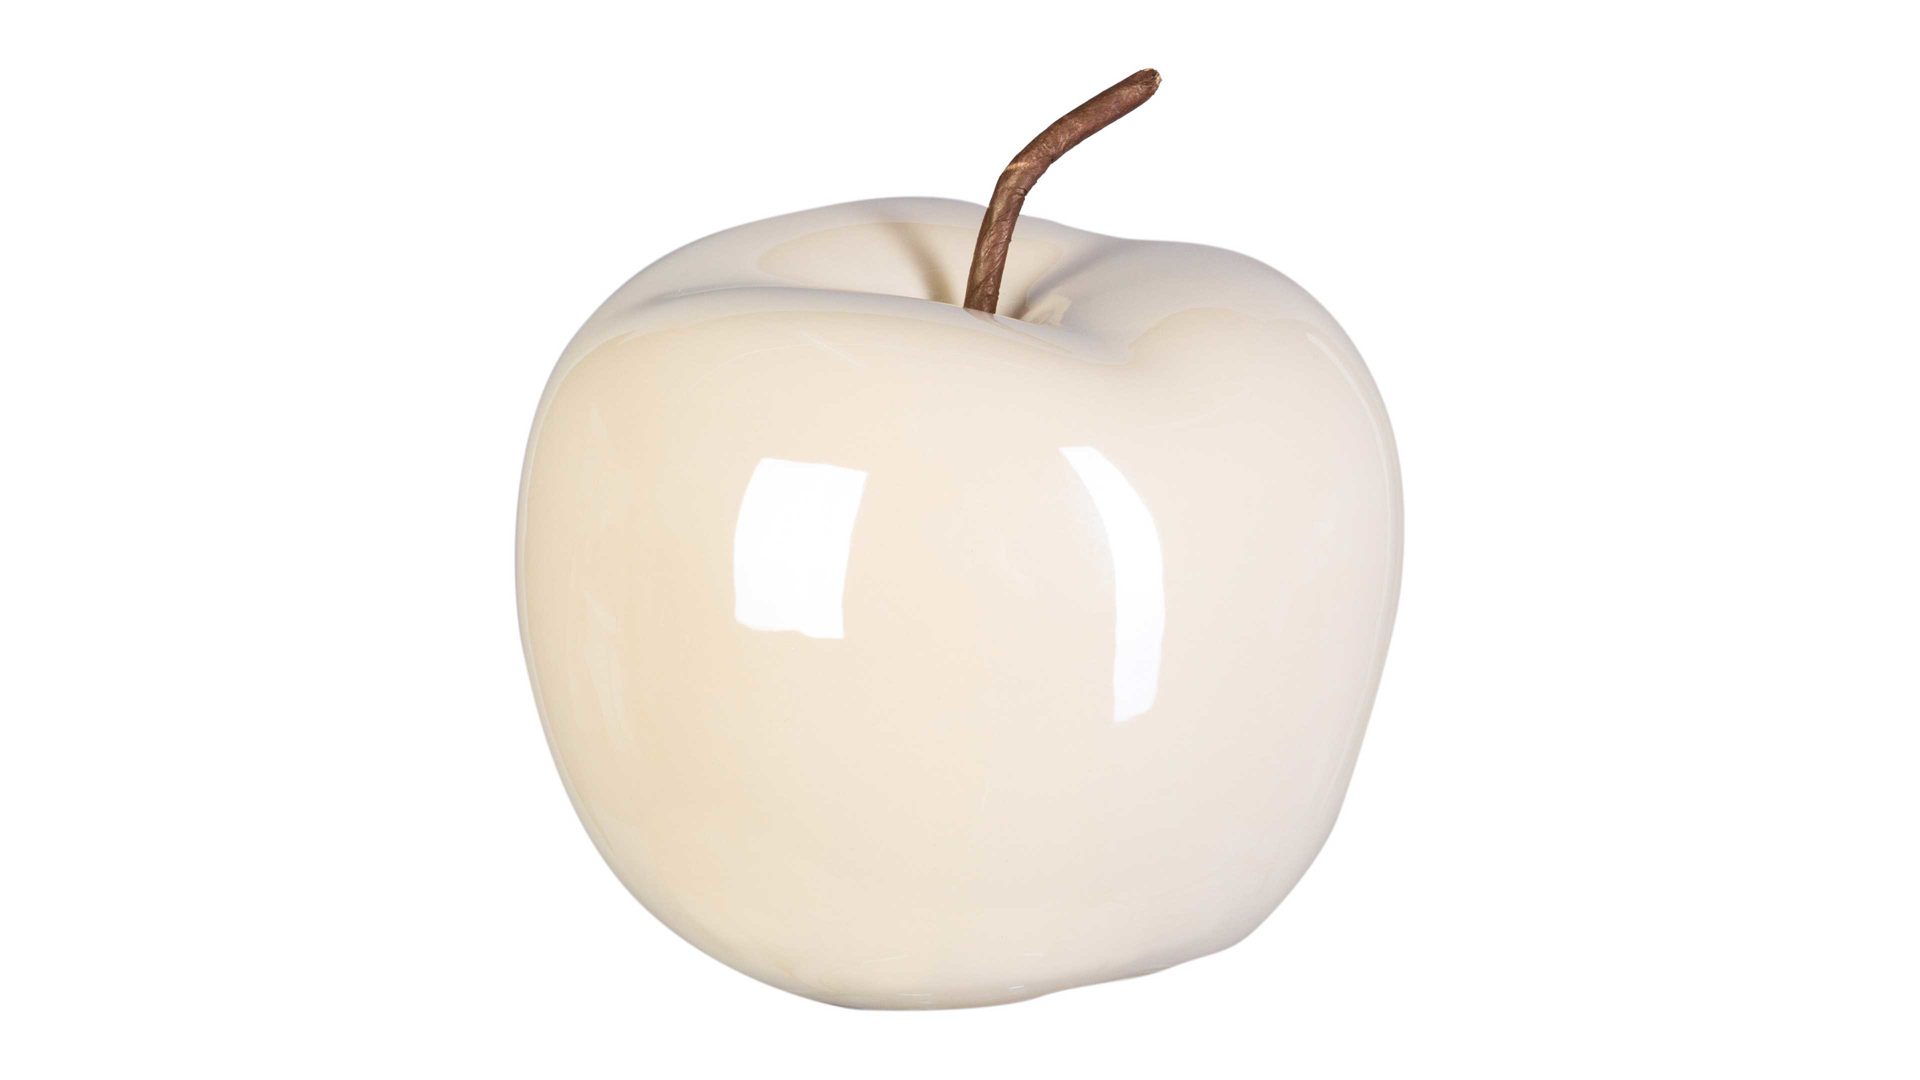 Figur Gasper aus Keramik in Beige Keramik-Apfel Glorian cremefarbene Keramik – Durchmesser ca. 12 cm